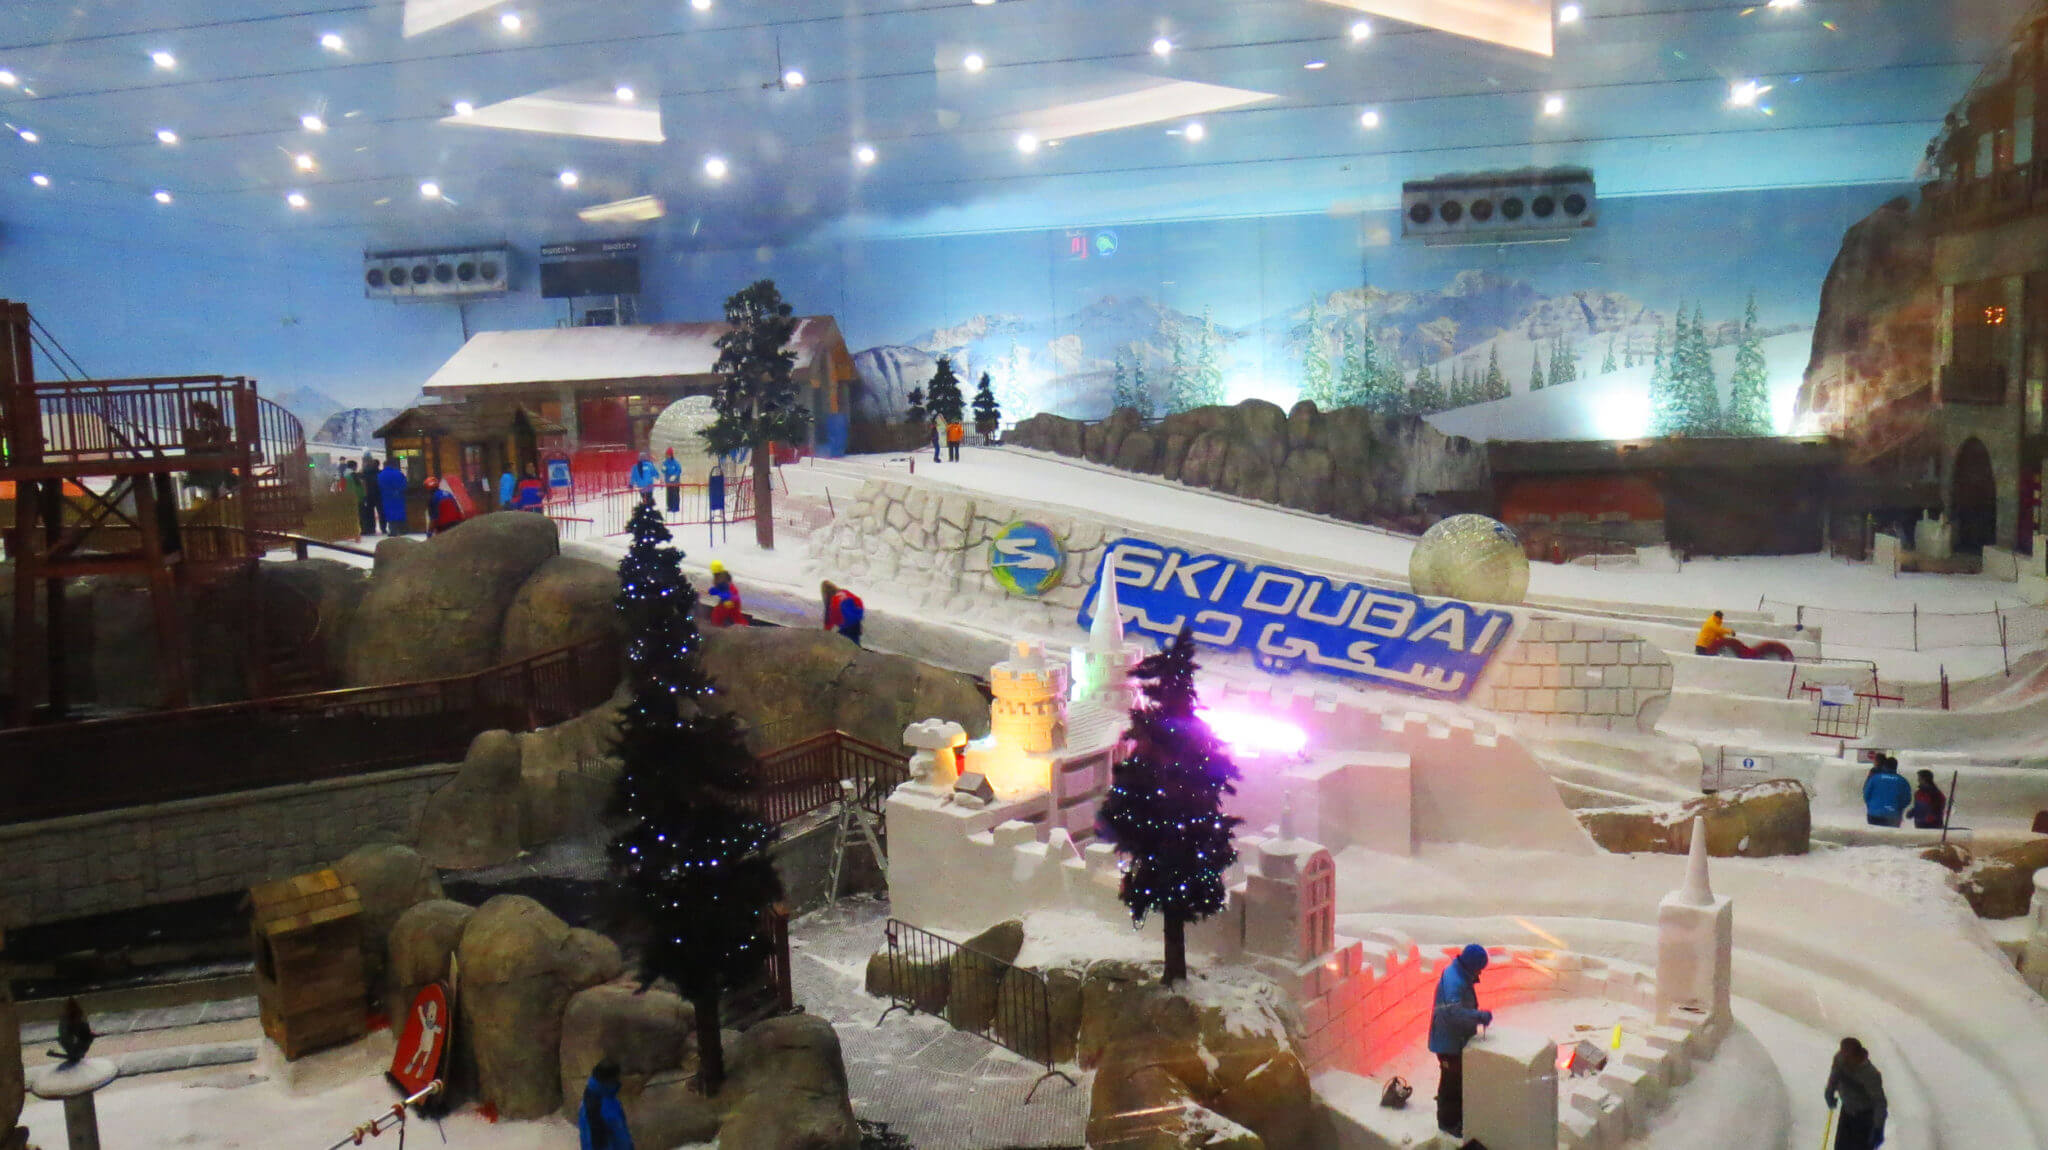 Dubai Mall of the Emirates Ski Dubai